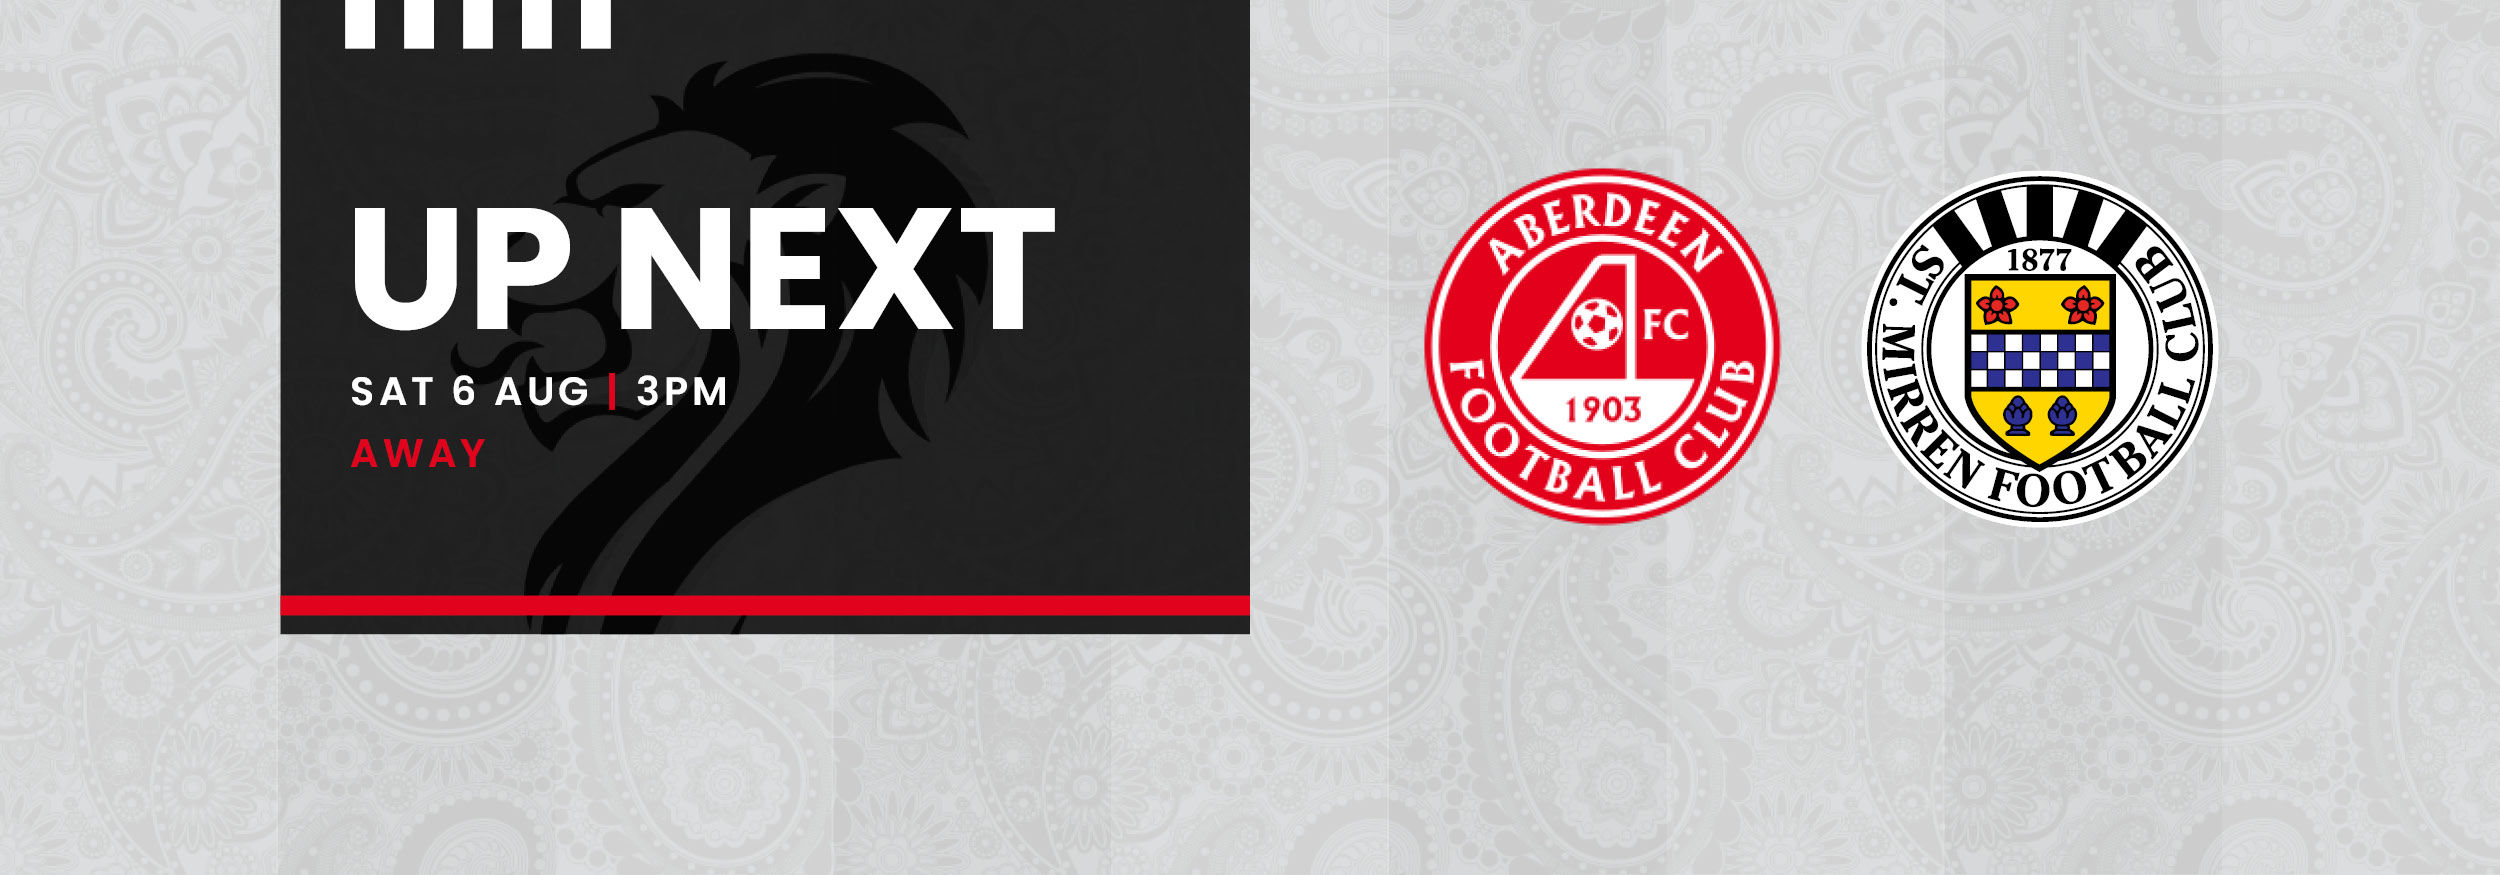 Up Next: Aberdeen v St Mirren (6th Aug)